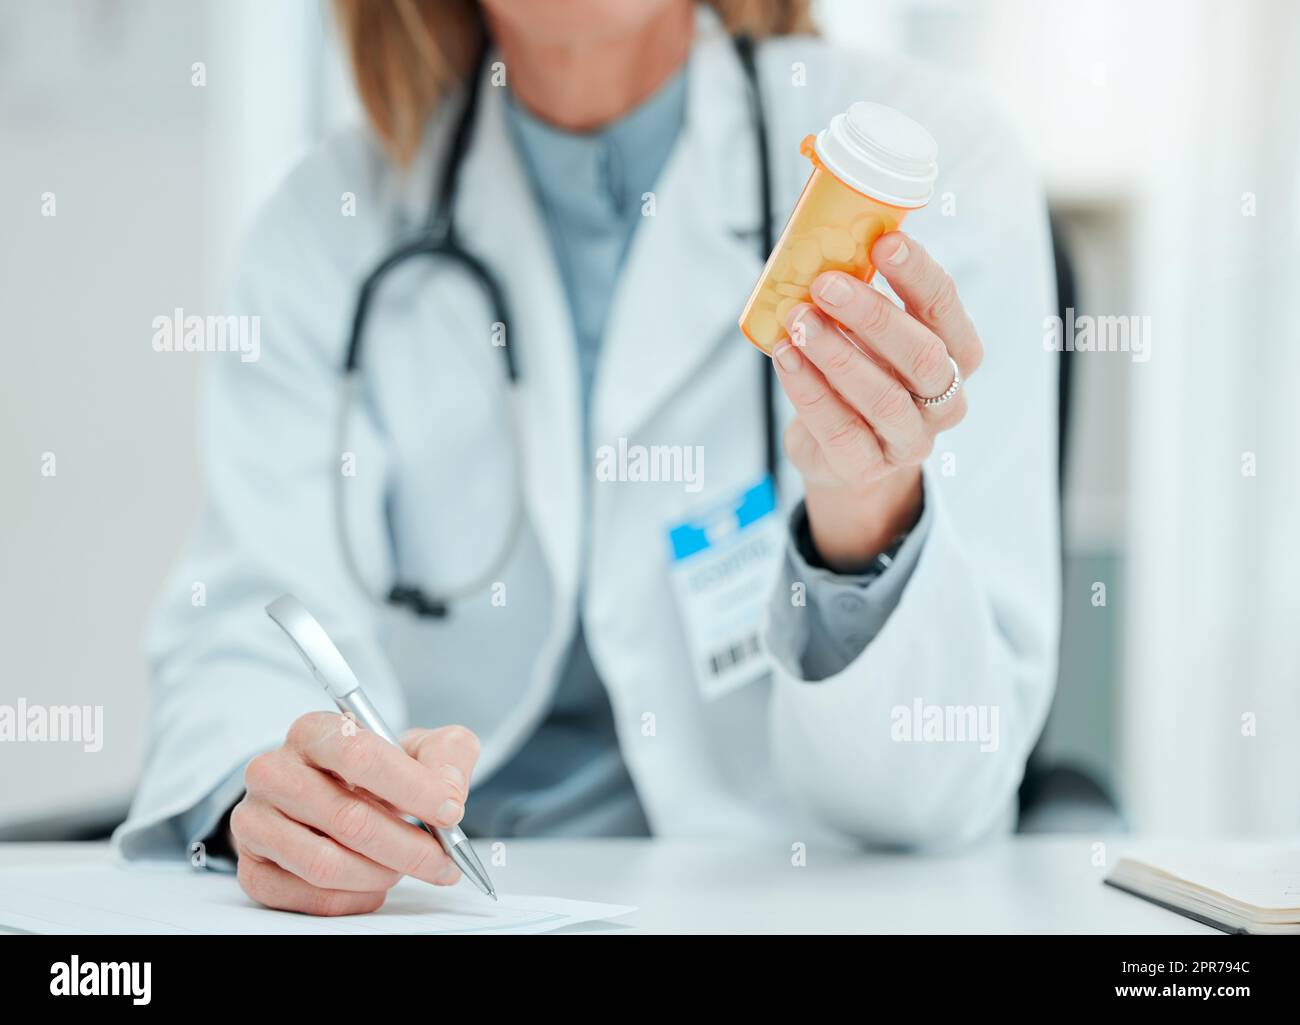 Ich habe genaue Anweisungen, wie man diese einnimmt. Freigestellte Aufnahme eines nicht erkennbaren Arztes, der allein in ihrer Klinik sitzt und Notizen schreibt, während er eine Flasche Pillen in der Hand hält. Stockfoto